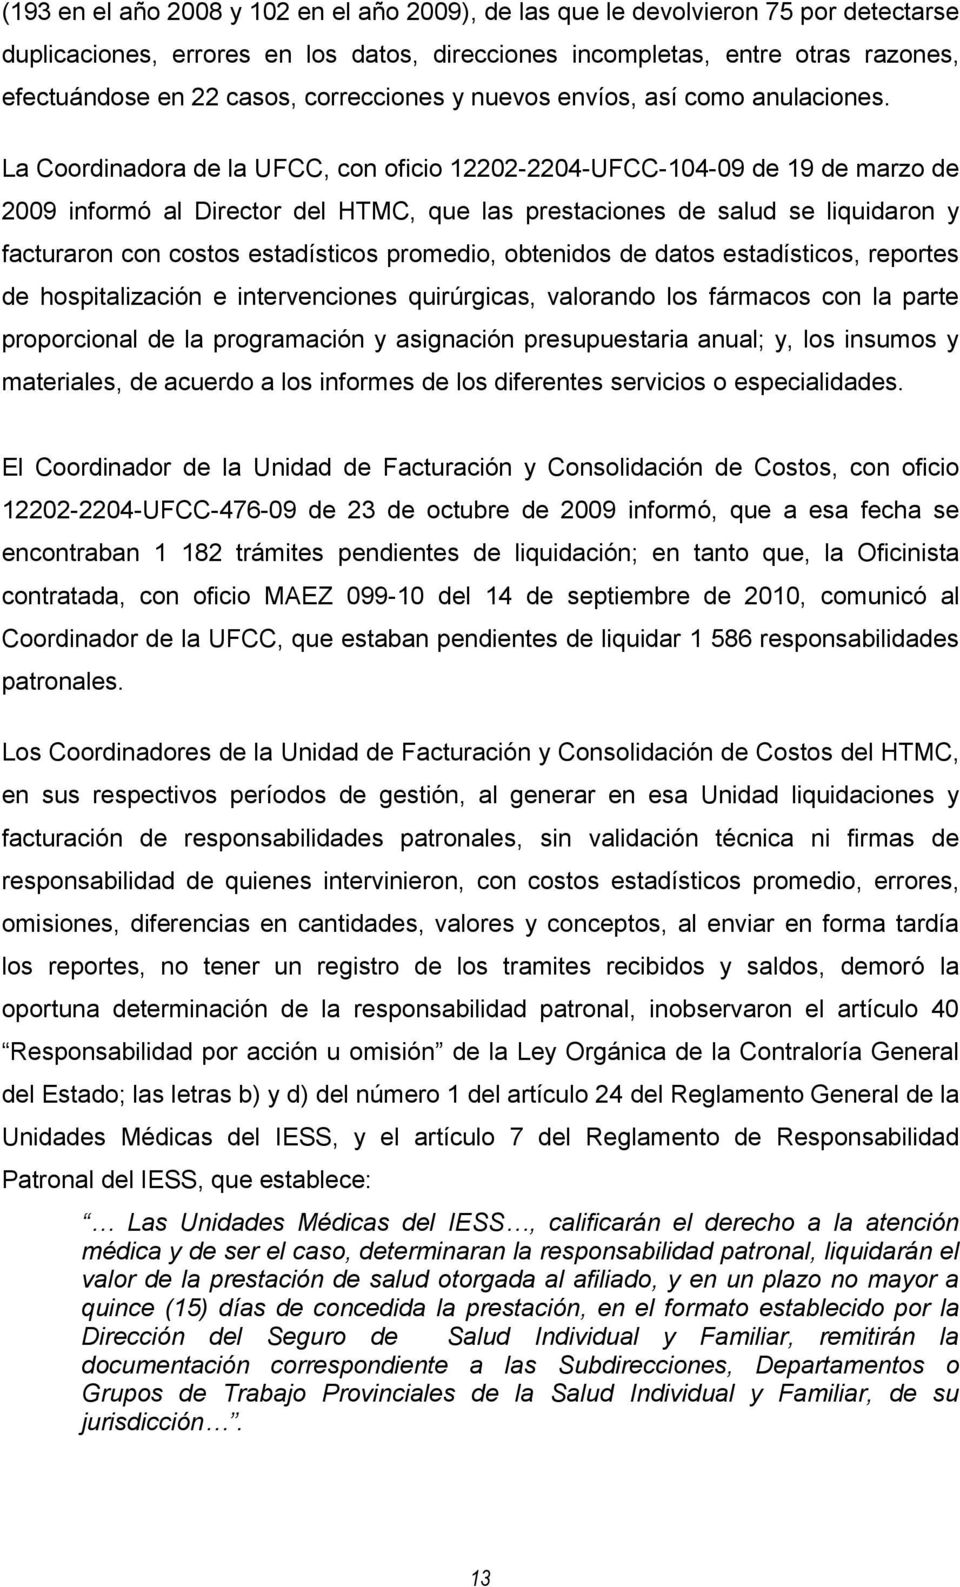 La Coordinadora de la UFCC, con oficio 12202-2204-UFCC-104-09 de 19 de marzo de 2009 informó al Director del HTMC, que las prestaciones de salud se liquidaron y facturaron con costos estadísticos